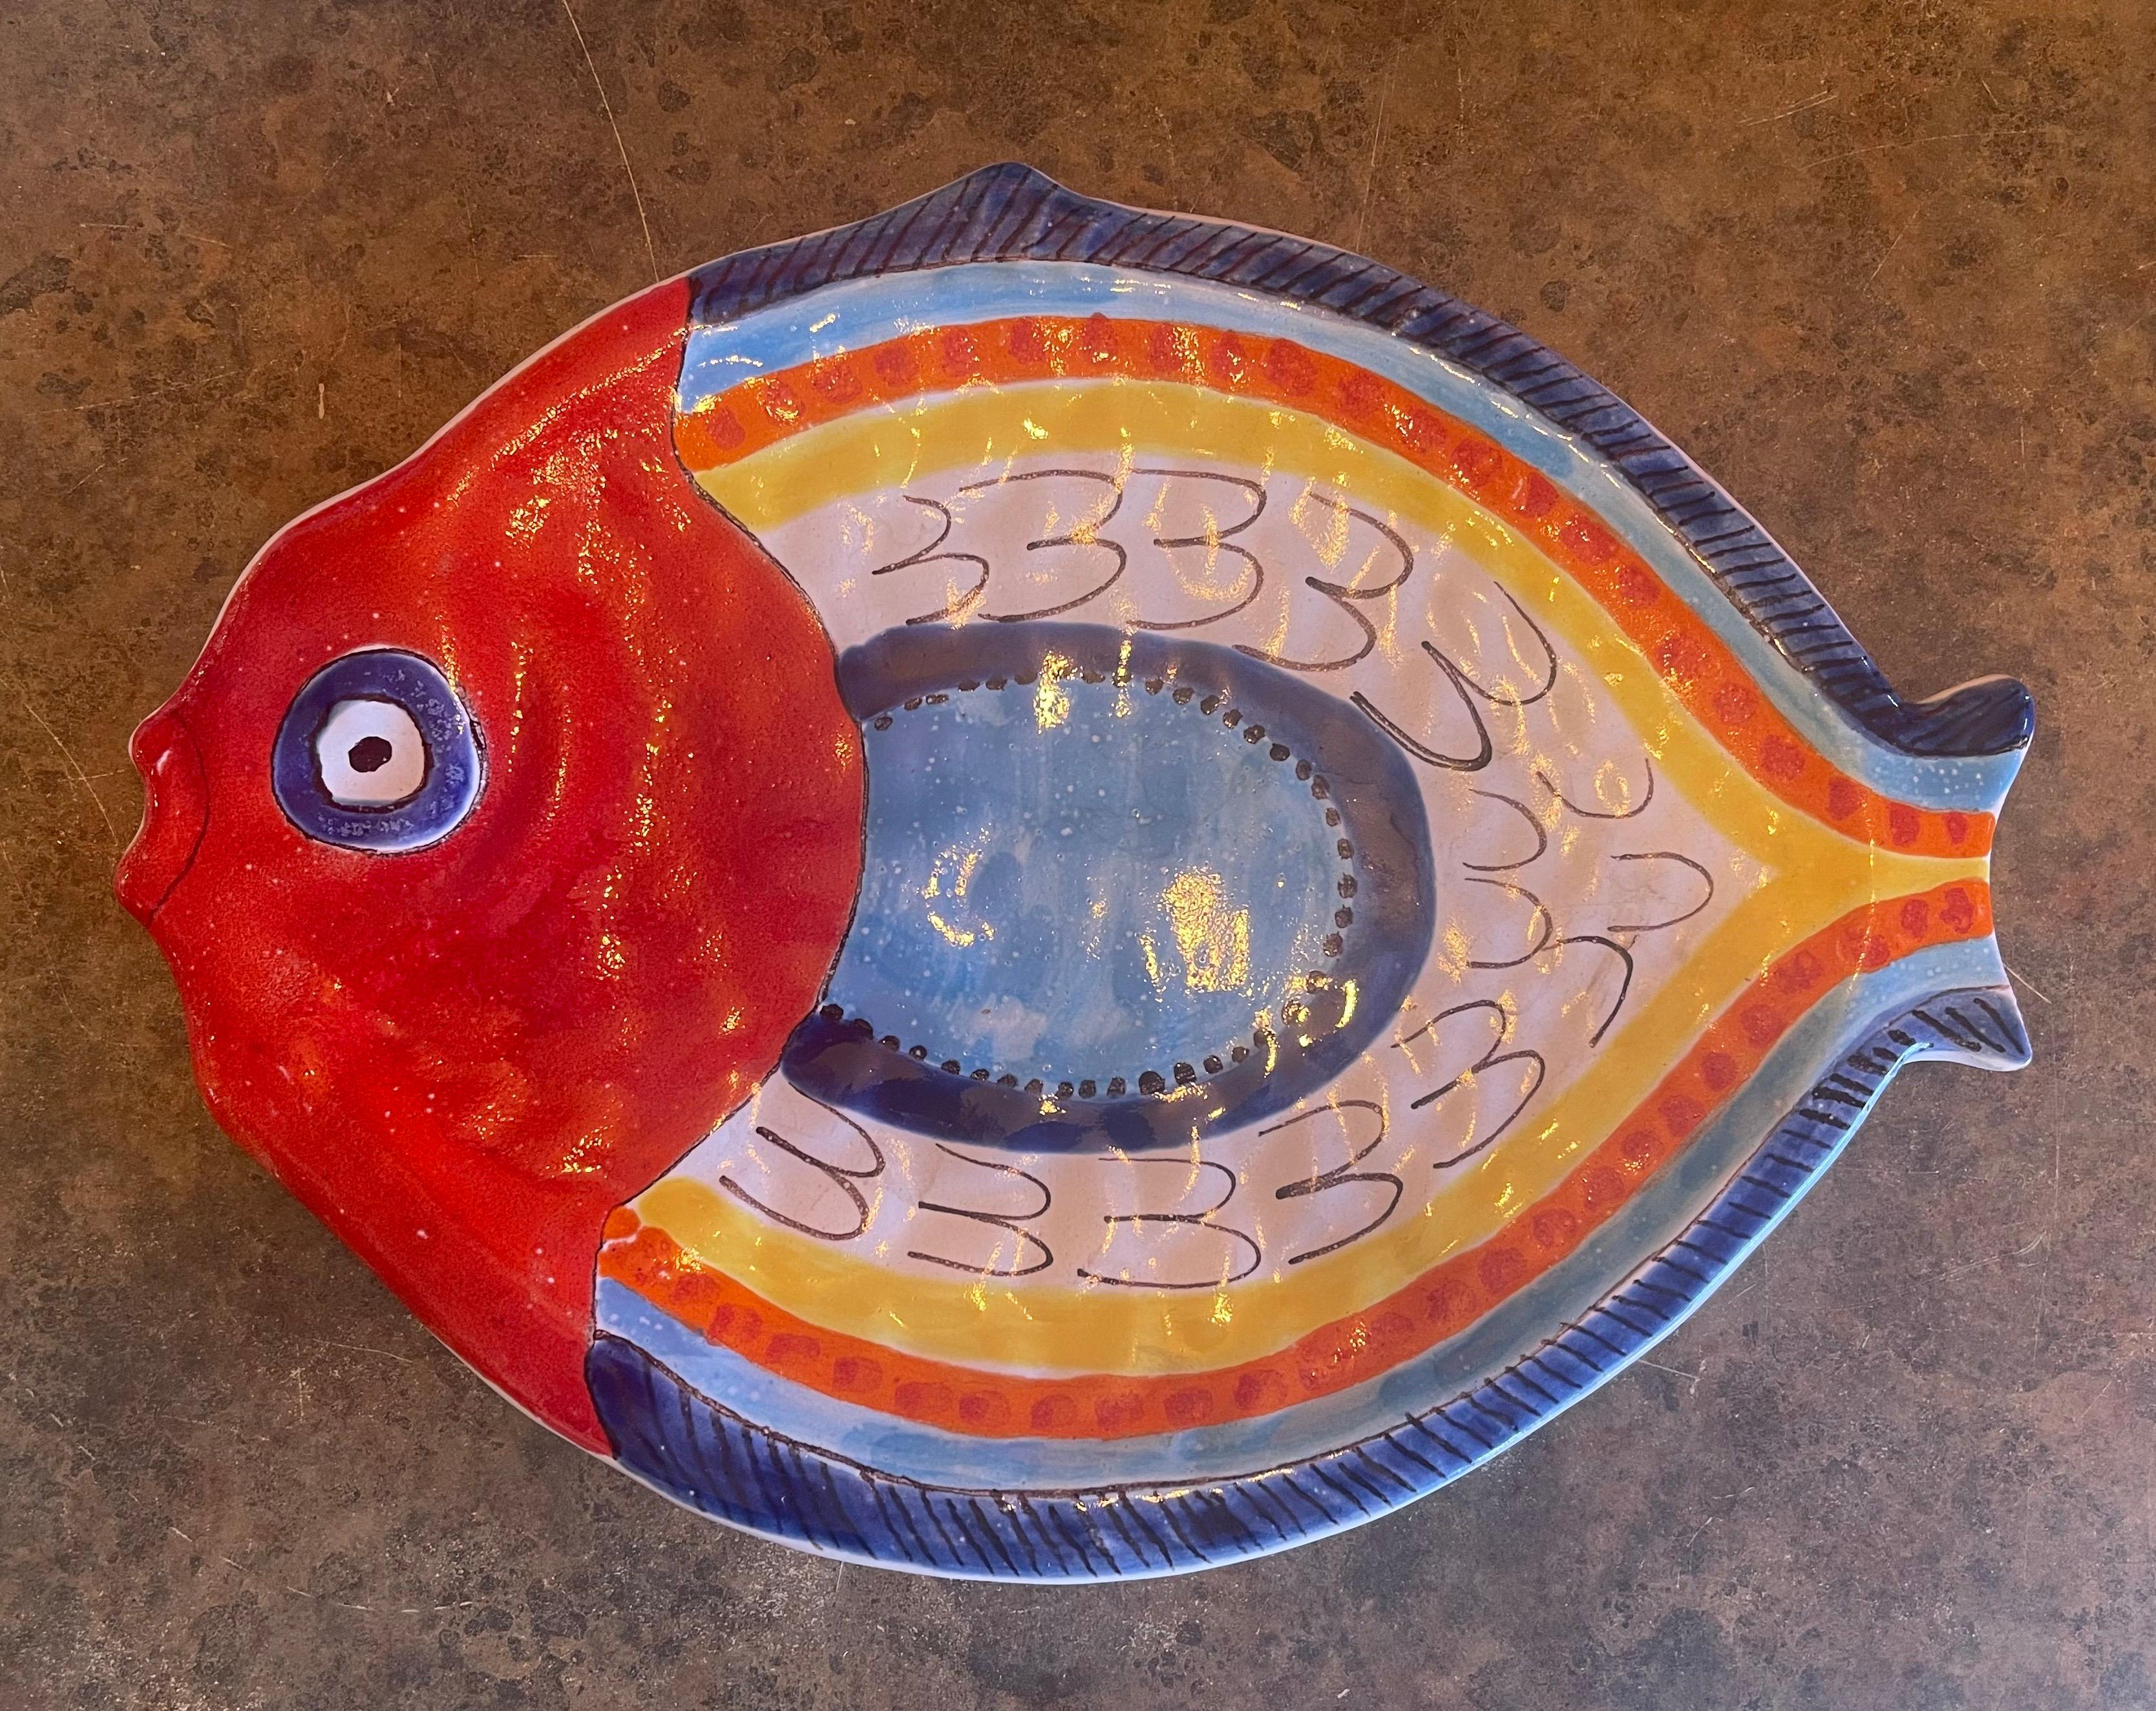 Magnifique plat de service décoratif en céramique peint à la main représentant un poisson par DeSimone, vers les années 1960. La pièce est en excellent état, sans éclats ni fissures, avec une usure très légère. Elle est signée sur la face inférieure